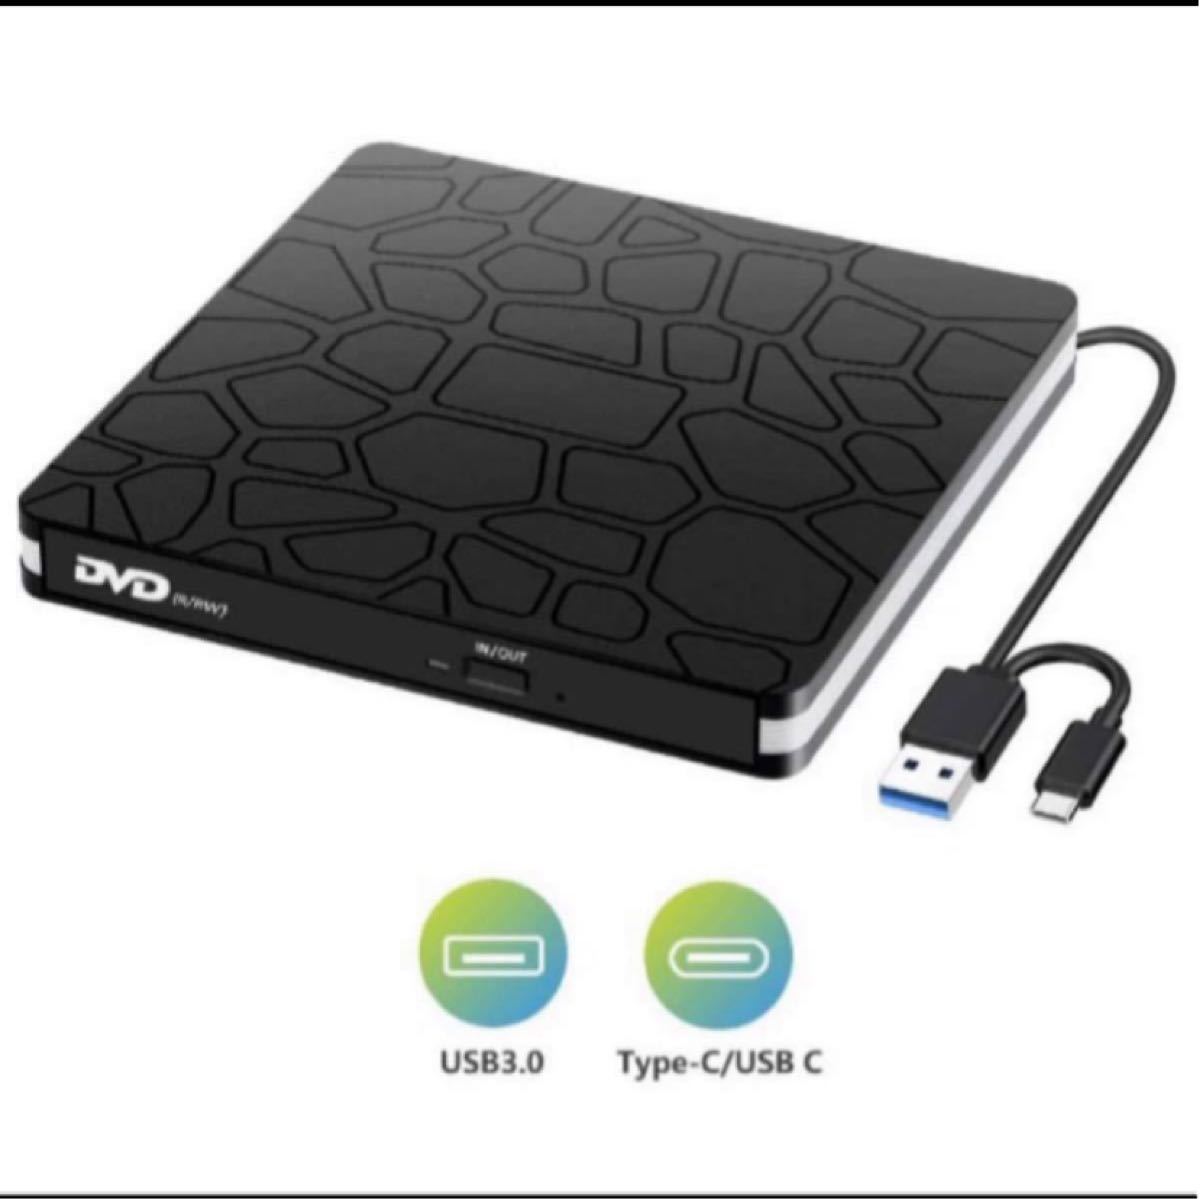 USB3.0 Type C 外付け DVDドライブ CD/DVDプレーヤー Type Cポート搭載ポータブルDVDドライブ高速薄型